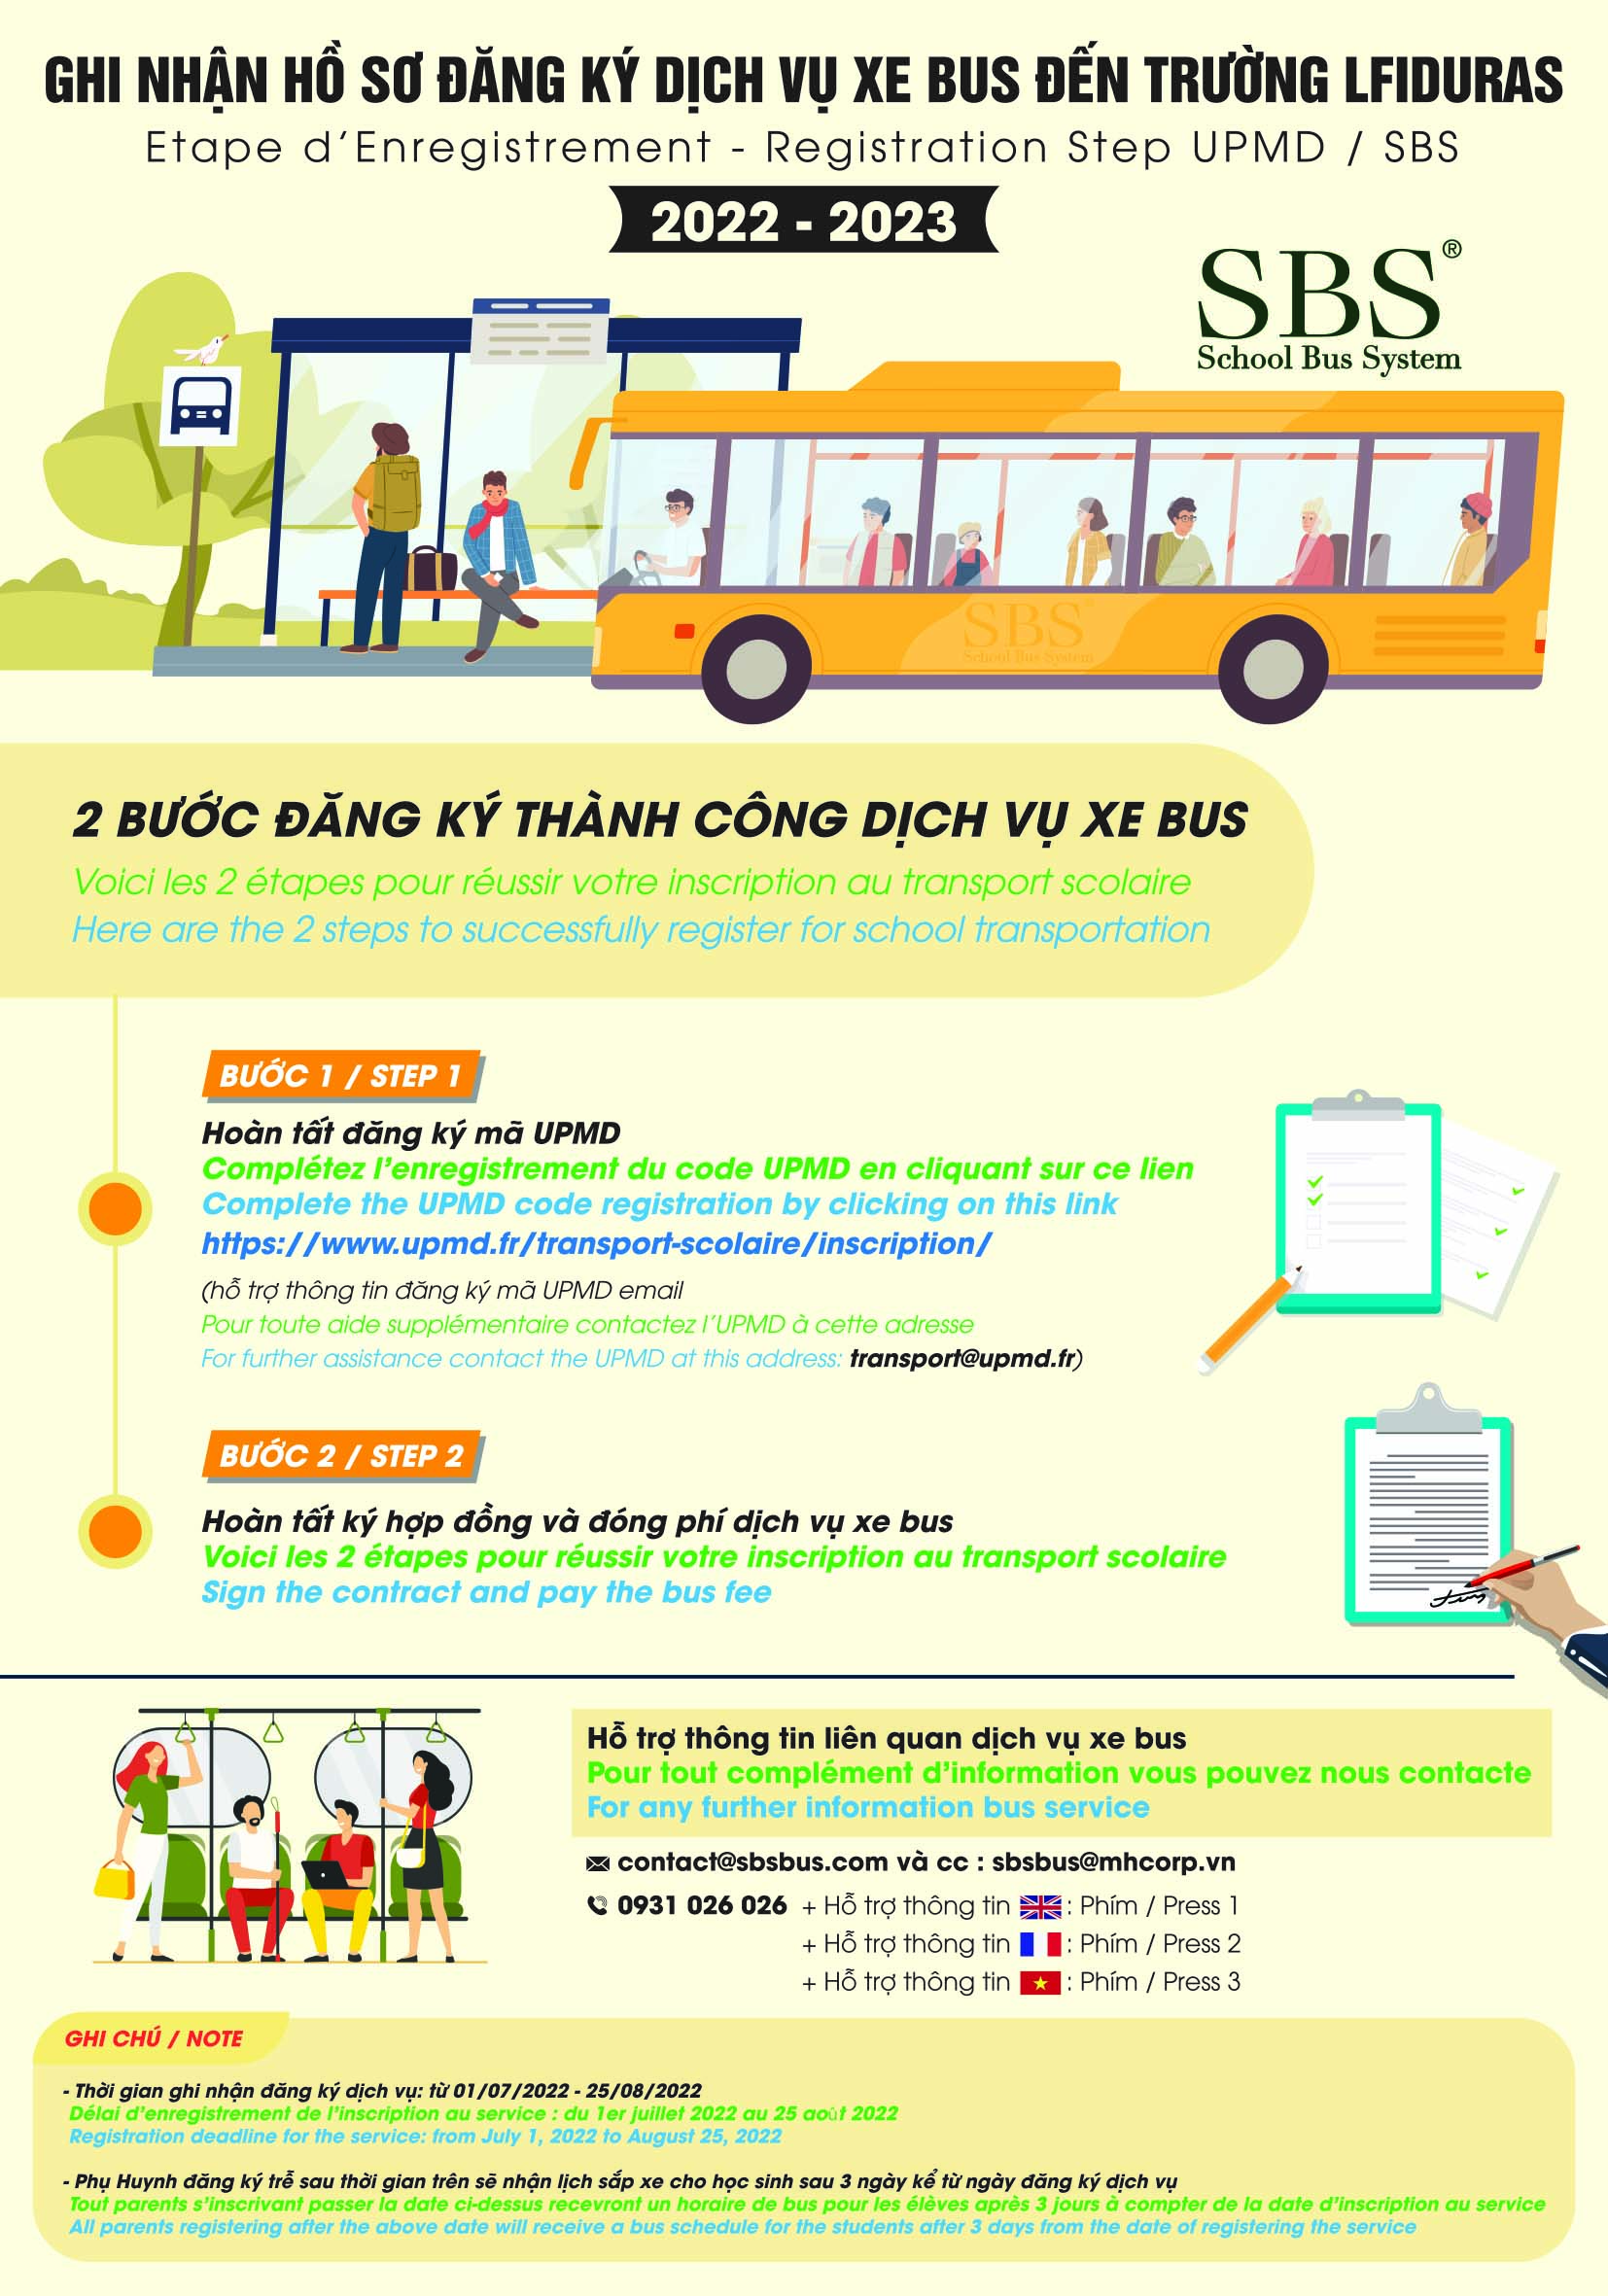 Ghi nhận hồ sơ đăng ký dịch vụ xe bus đến trường LFIDuras 2022 – 2023